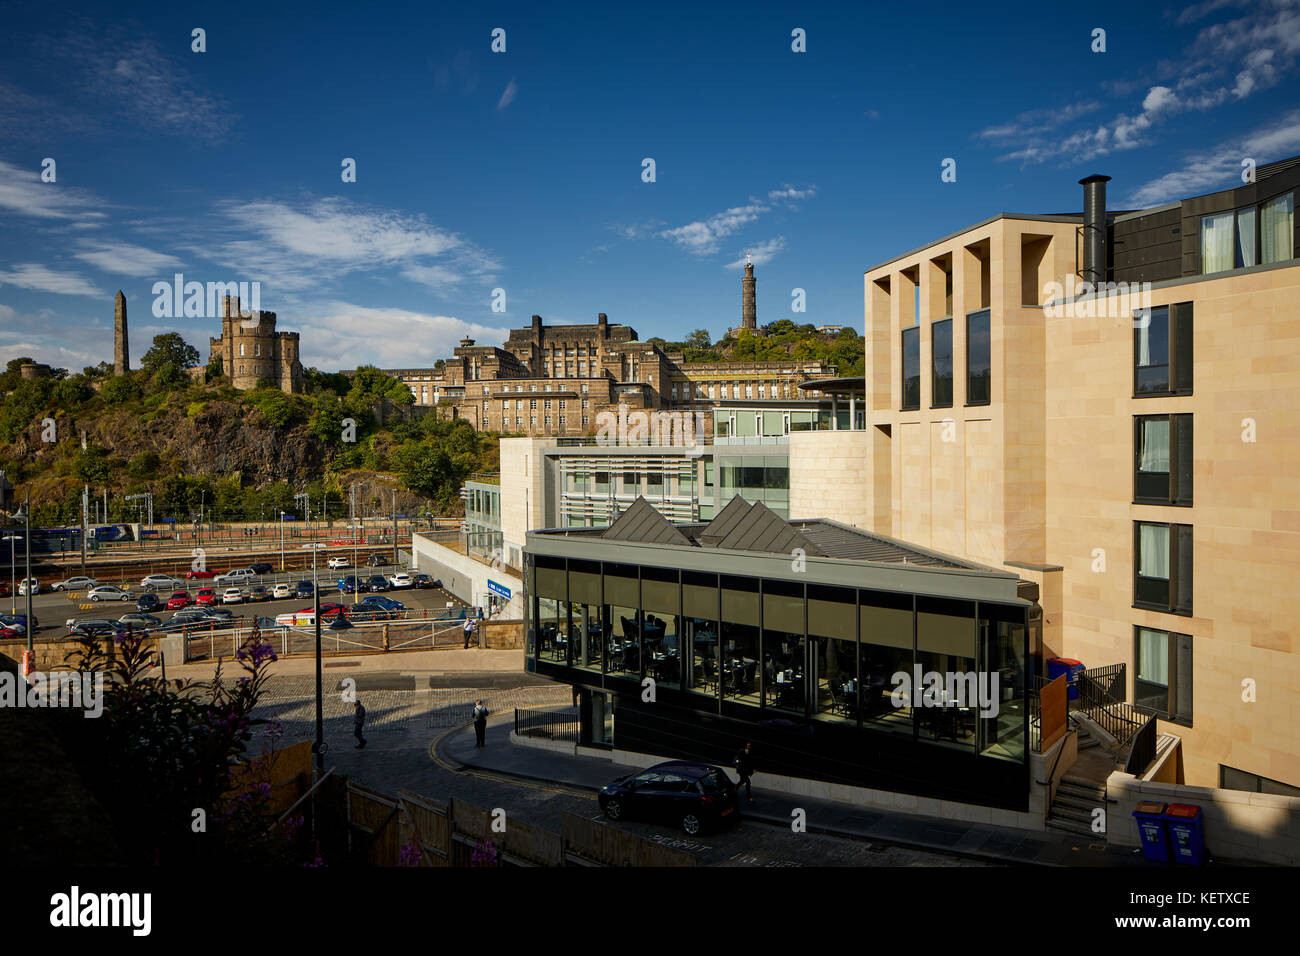 Historische Edinburgh, Schottland, dem Bahnhof Waverley, Ronaq indischen Restaurant, neue Waverley, Premier Inn Hotel, Calton Hill Stockfoto